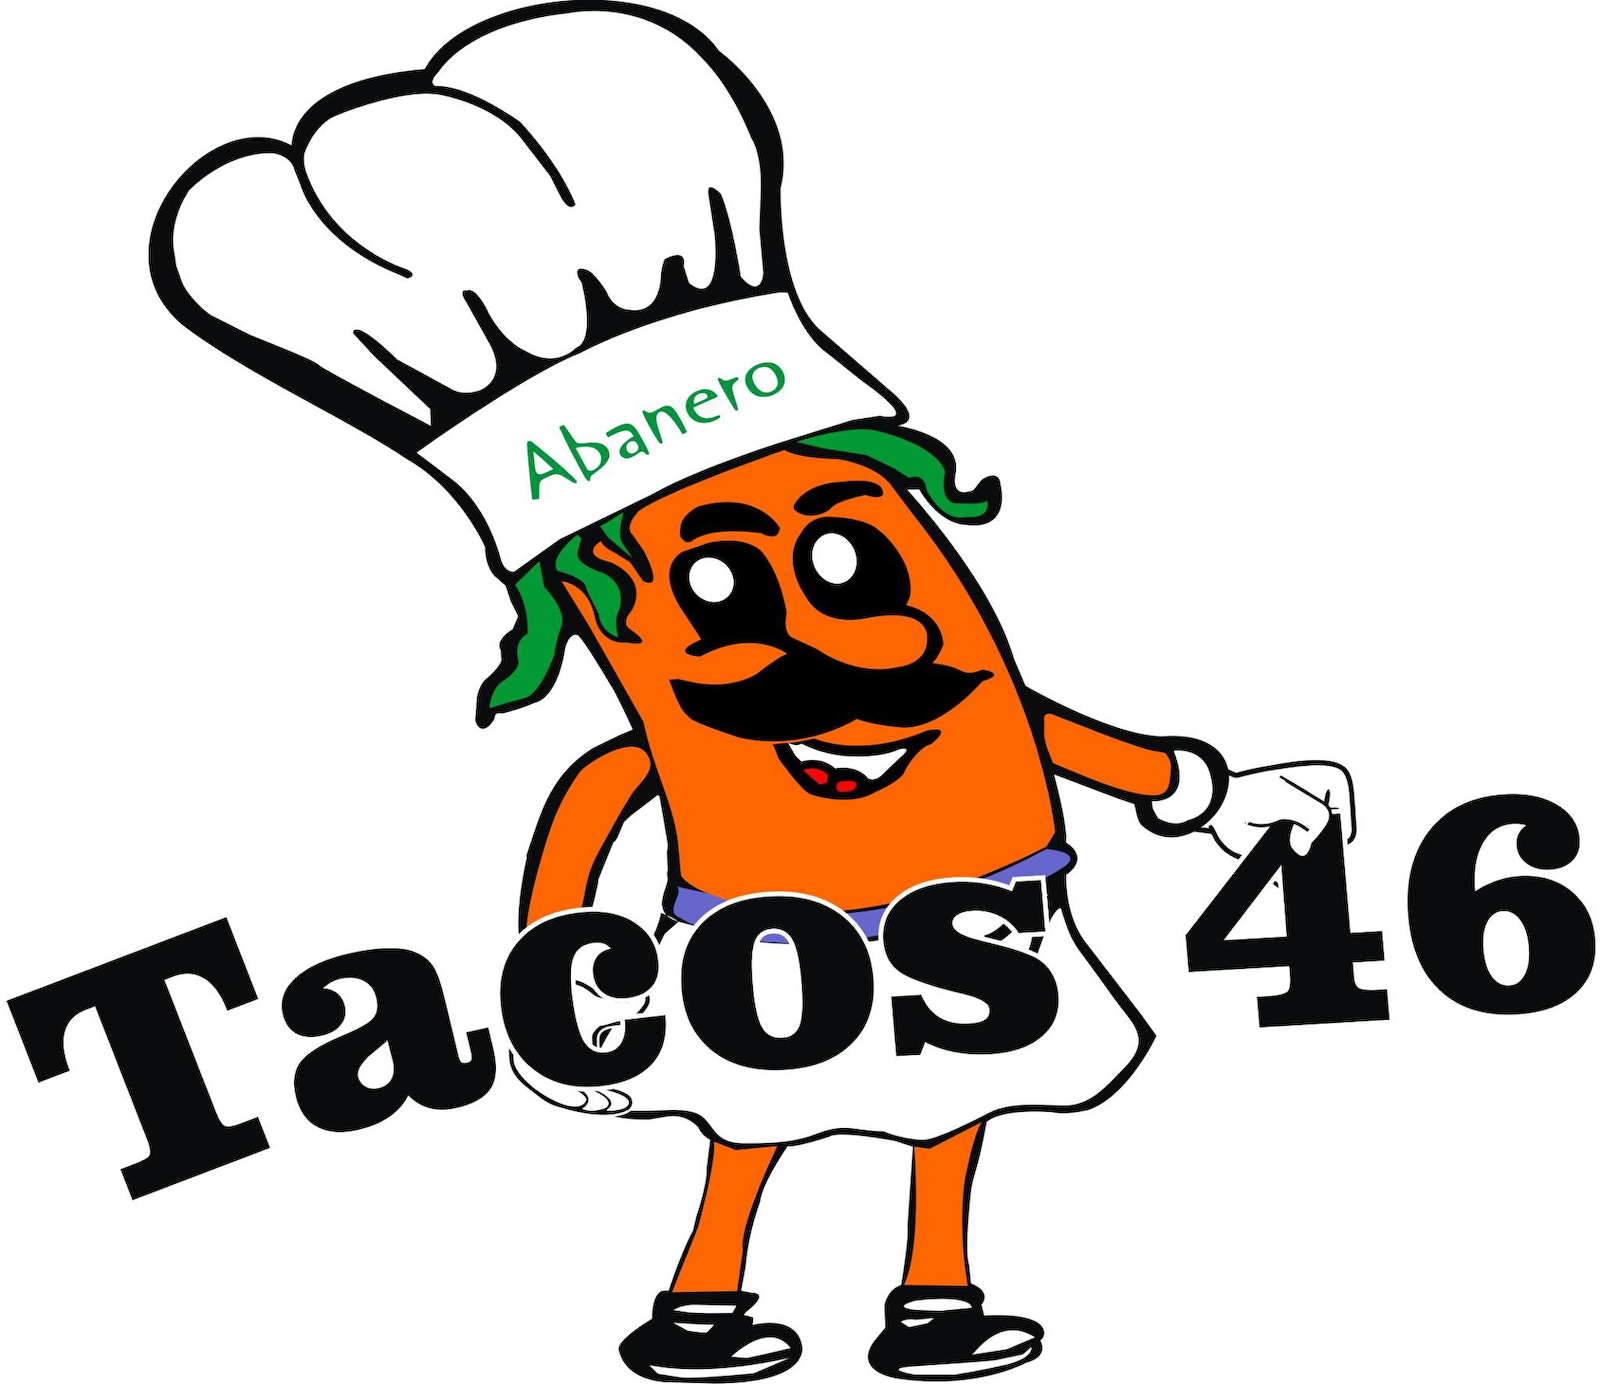 Tacos 46